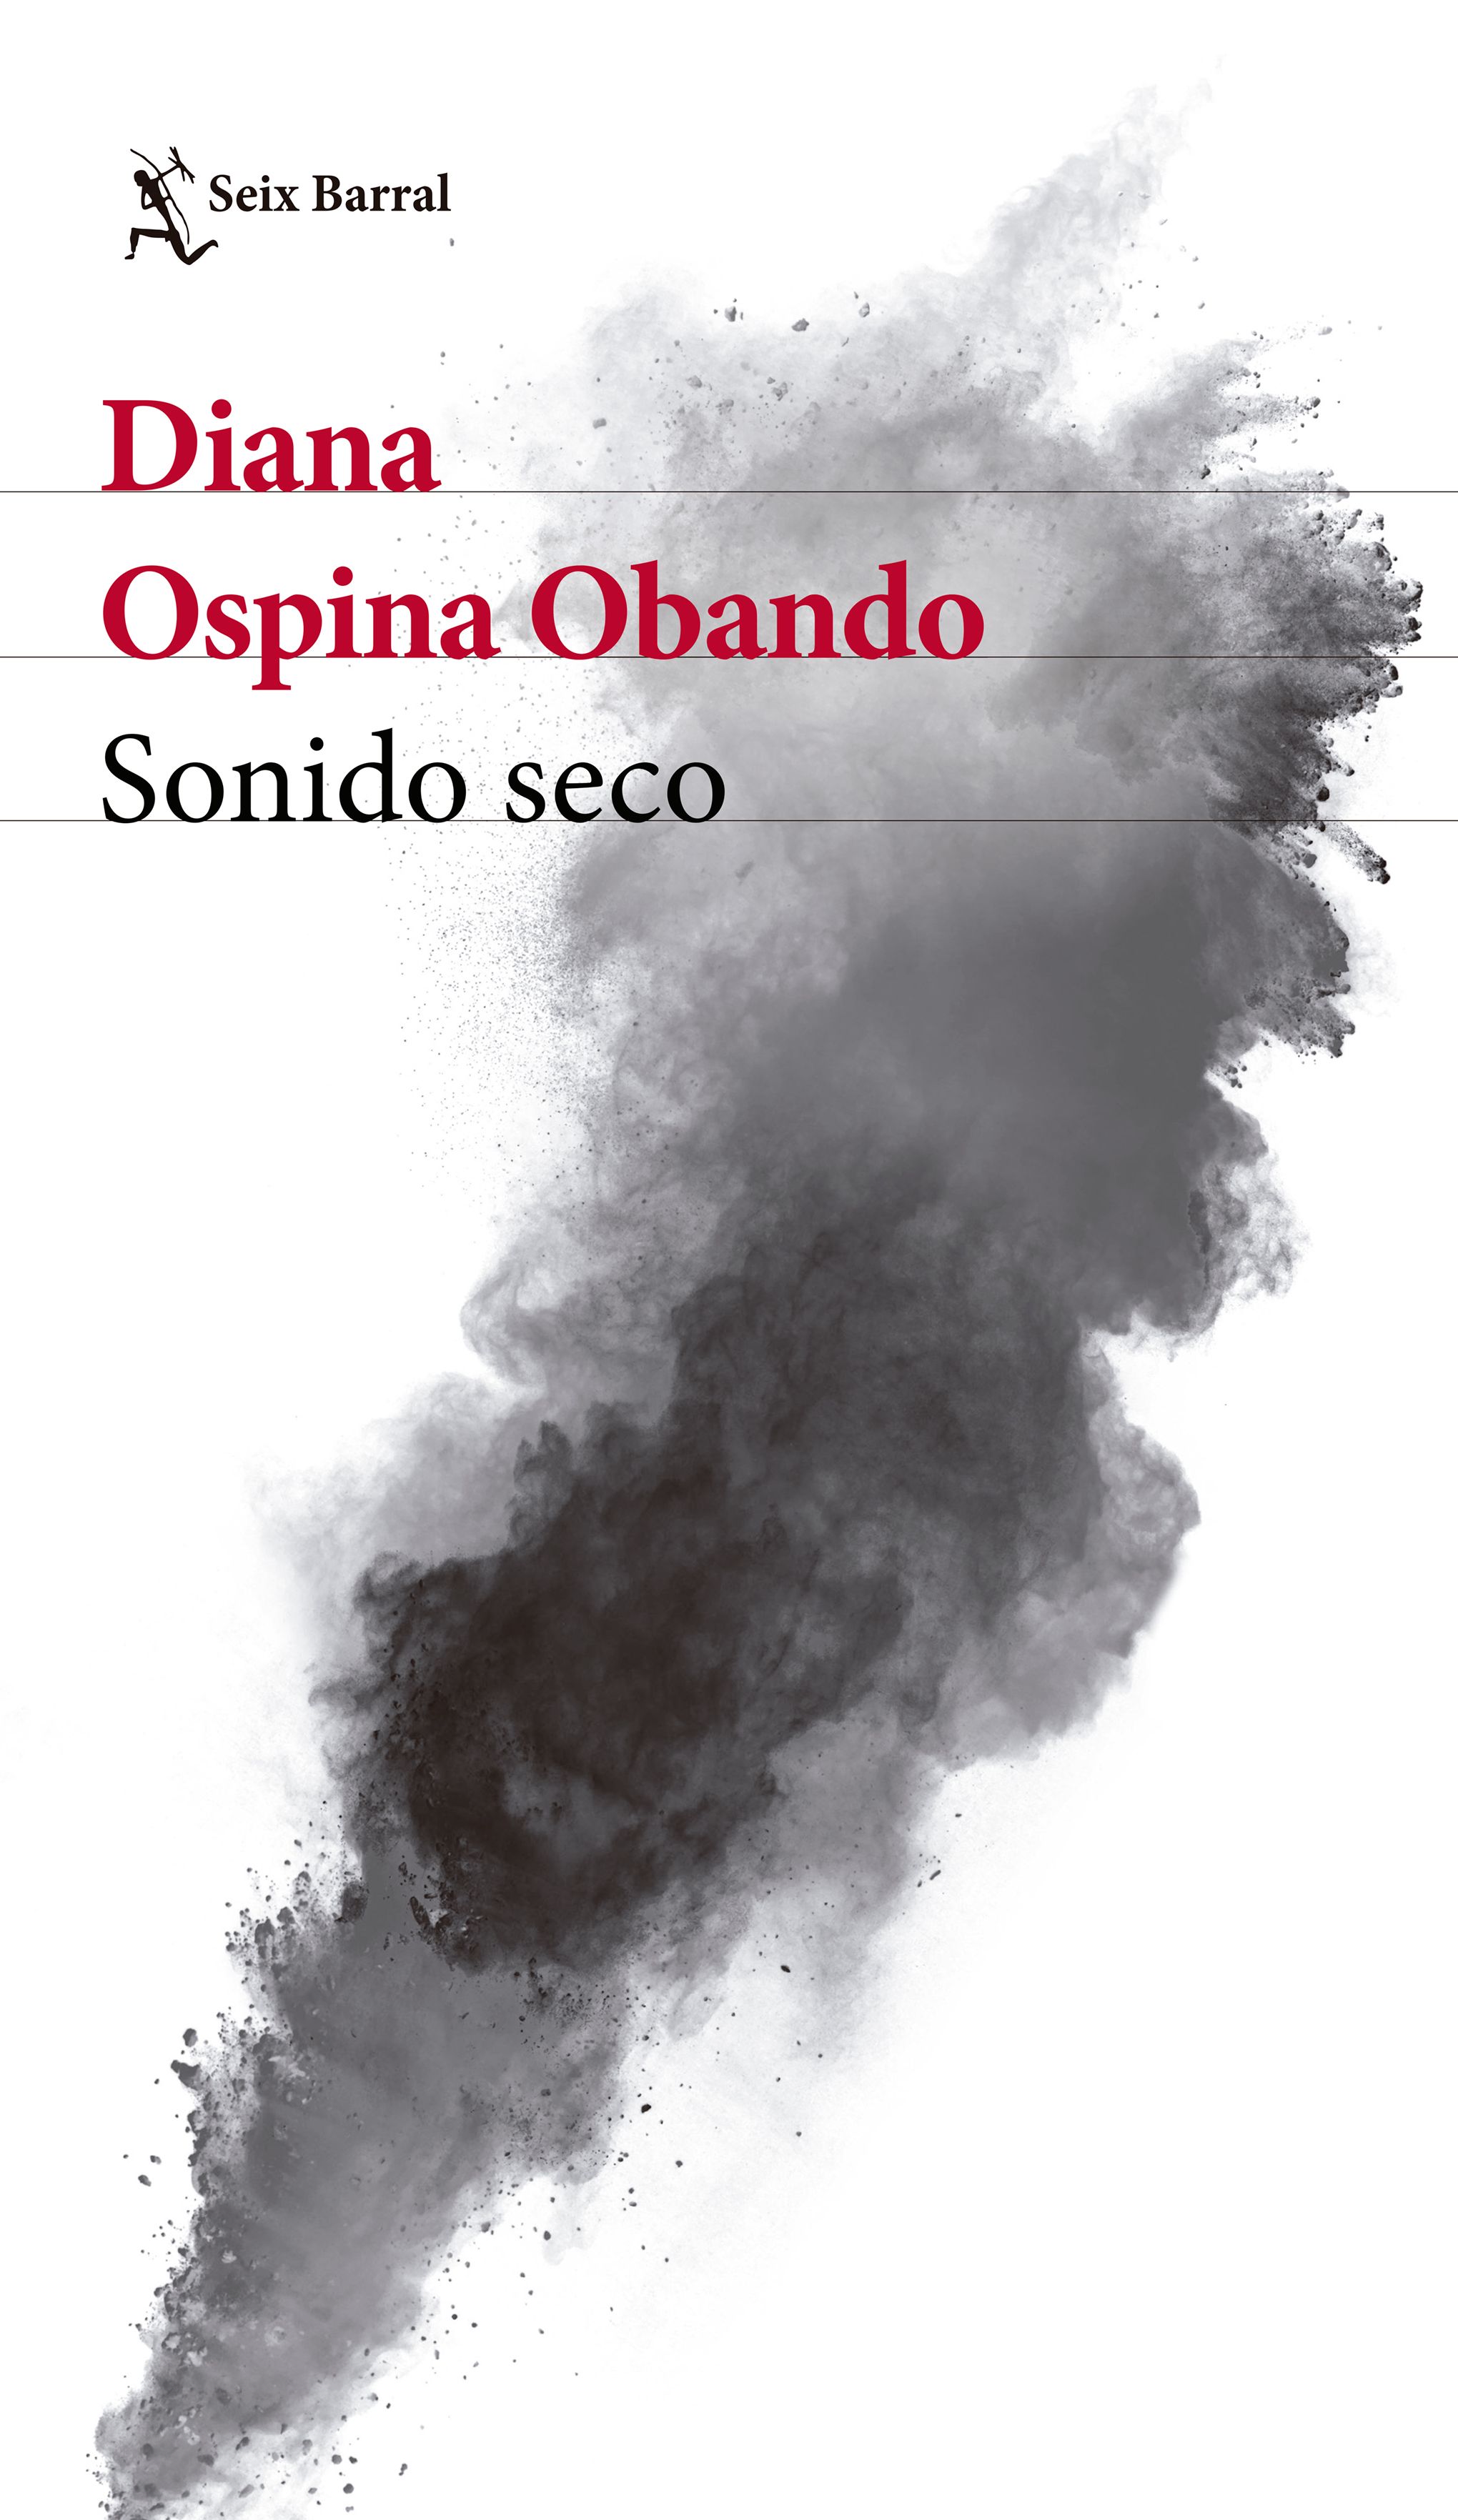 Portada del libro "Sonido seco", de Diana Ospina Obando. (Planeta de Libros).